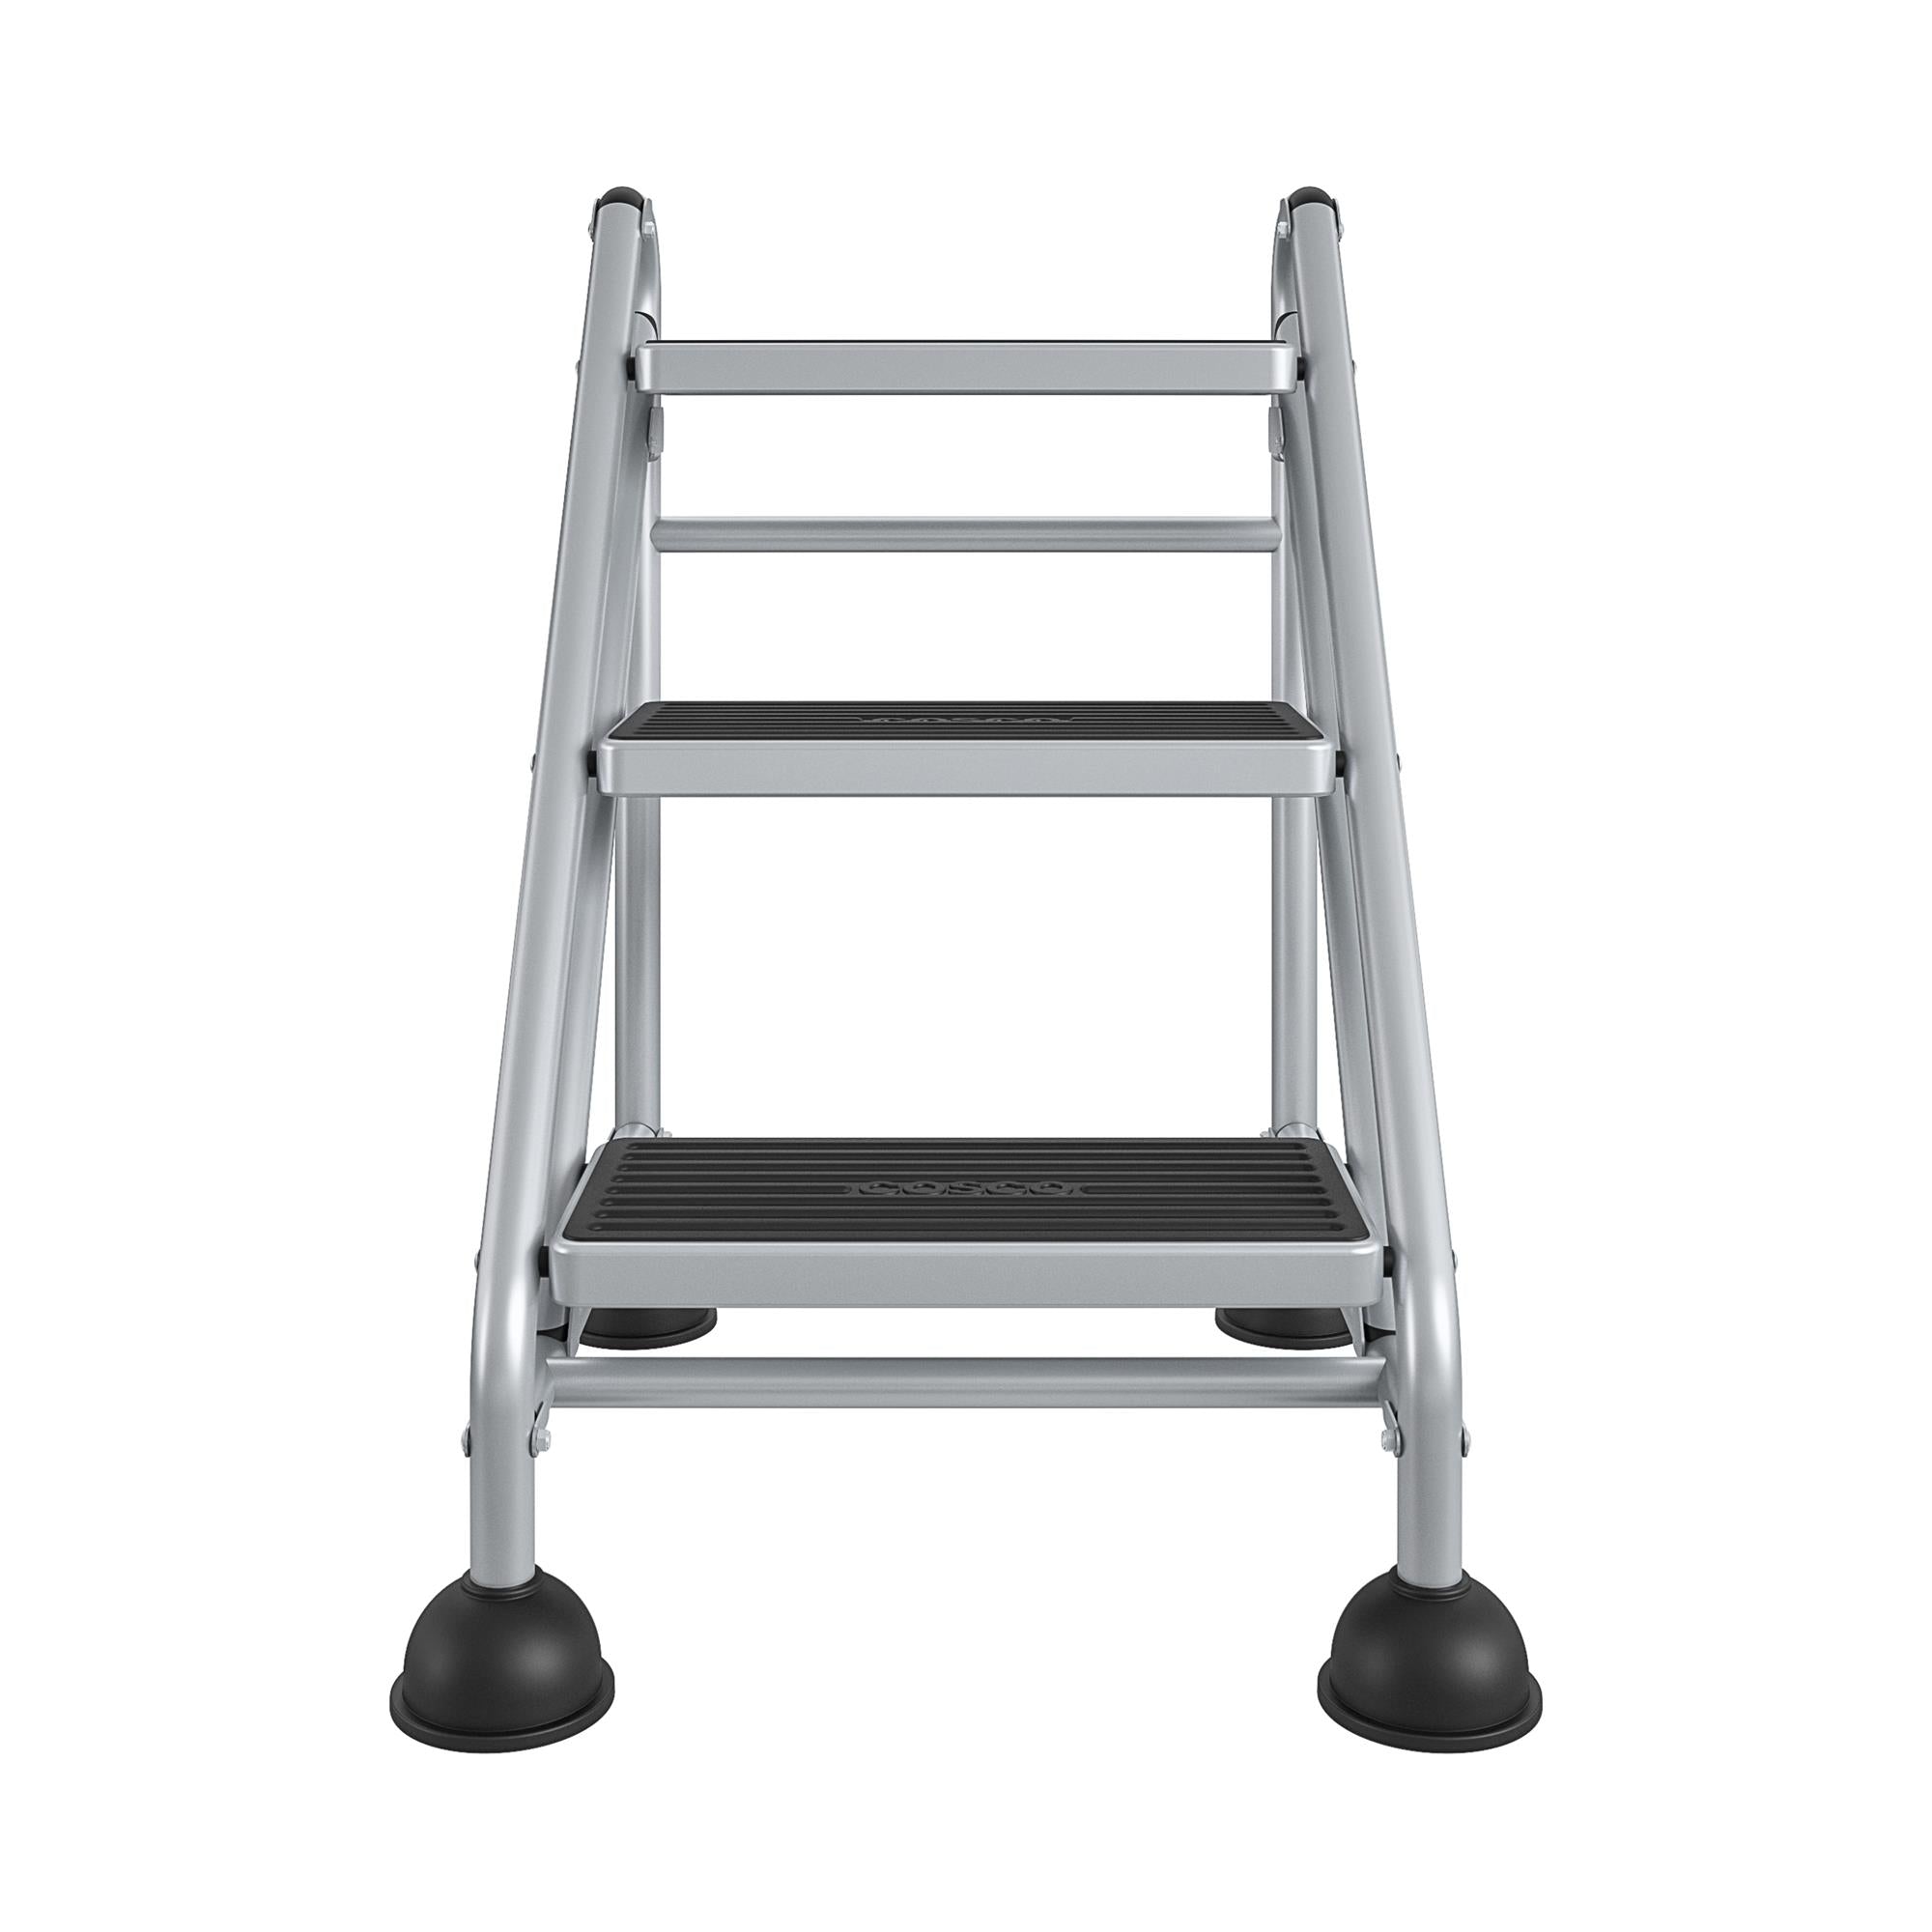 Three-Step Commercial Rolling Step Ladder - Grey/Grey/Blue - N/A